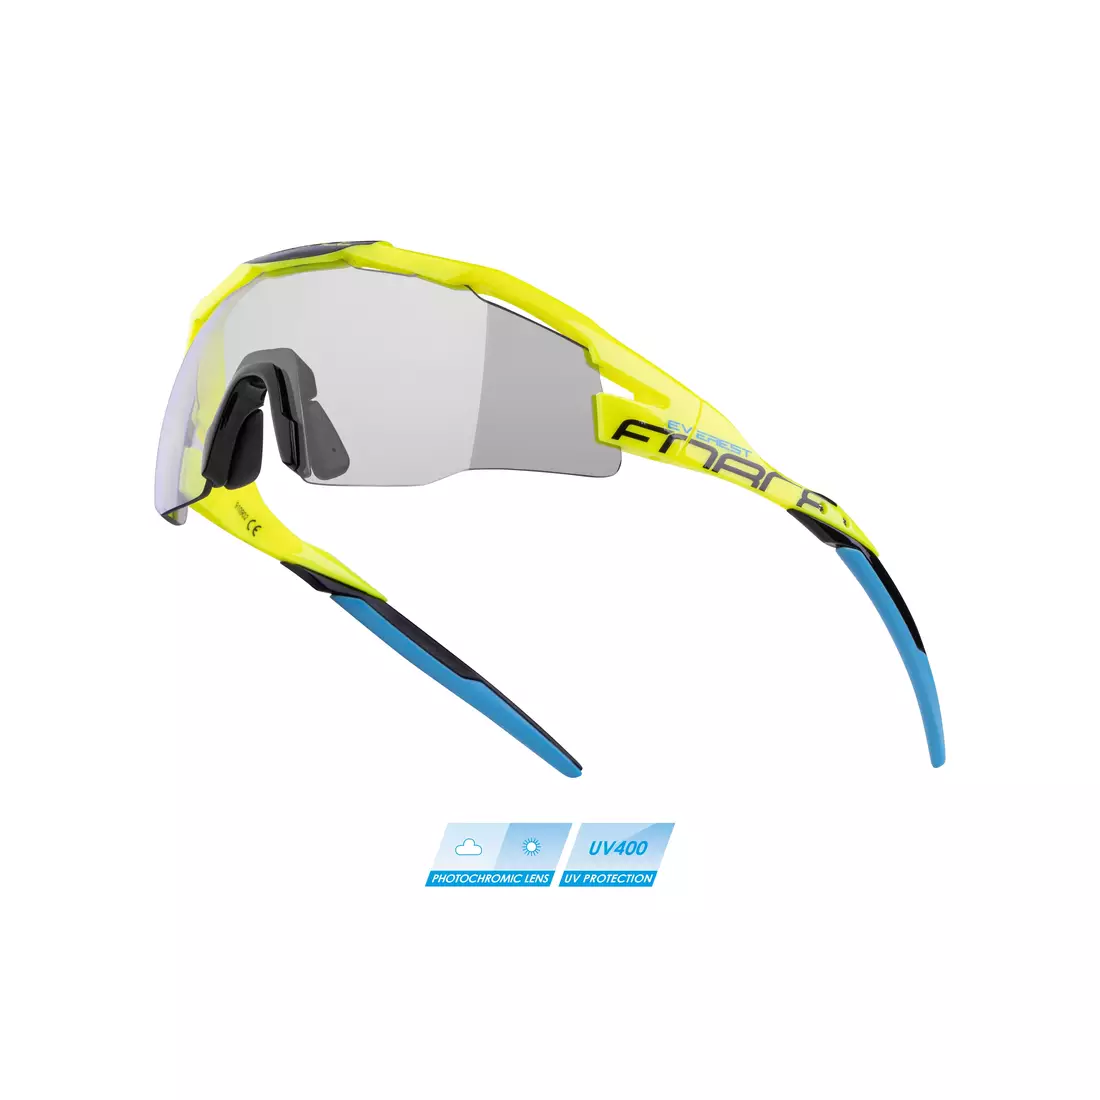 FORCE cyklistické / sportovní brýle EVEREST fotochromní, fluo, 910902